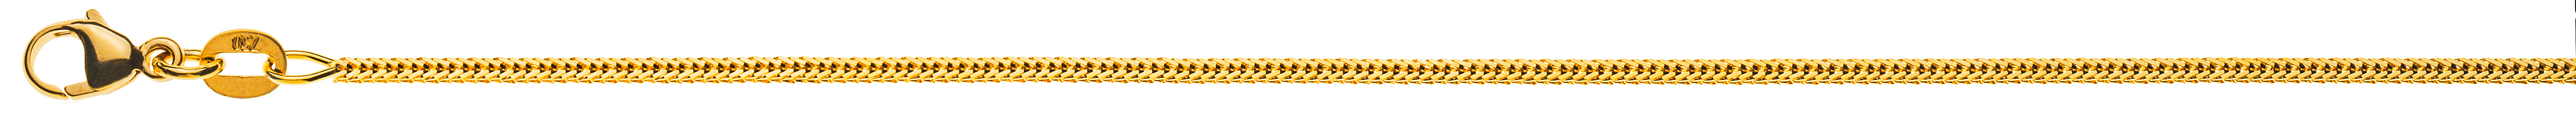 AURONOS Prestige Collier en or jaune 18K queue de renard diamantée 45cm 1.2mm